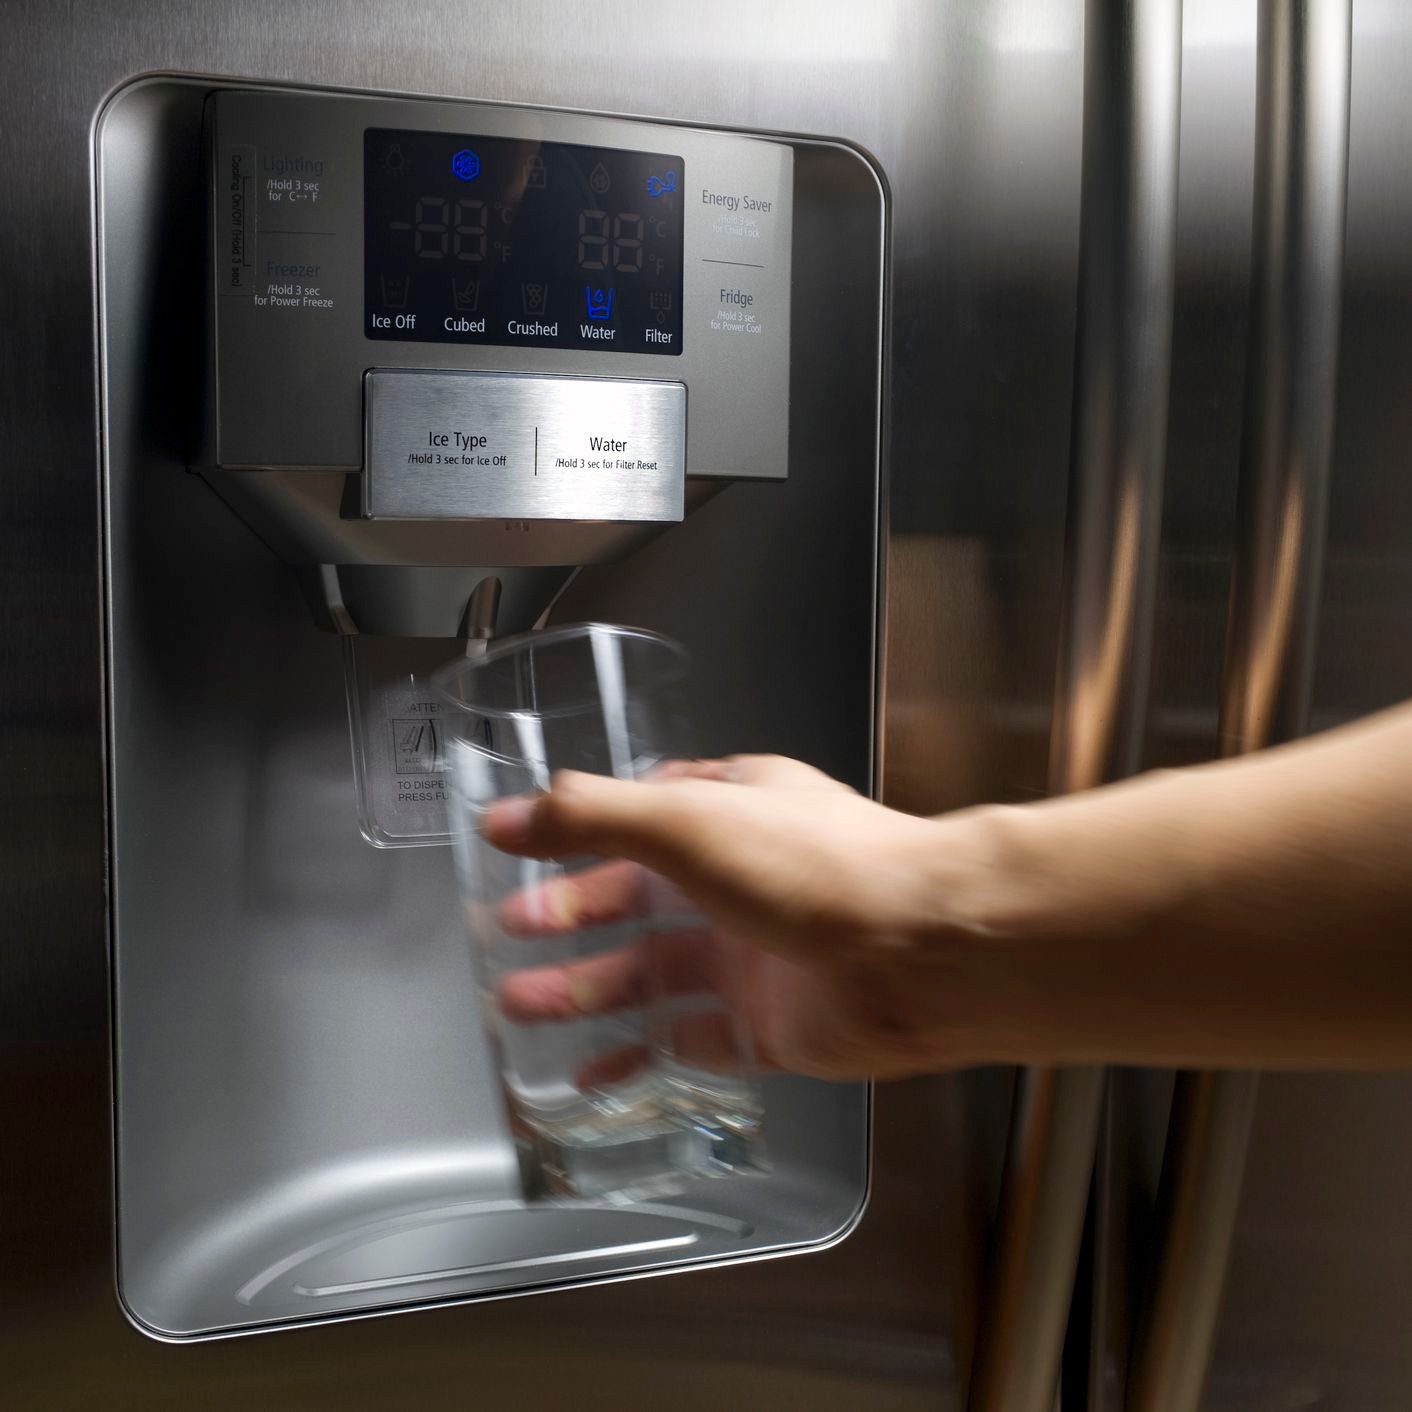 Холодная вода в холодильнике. Холодильник Water Dispenser. LG Electronics Water Dispenser холодильник. Холодильник LG С диспенсером для воды и льда. Холодильник с диспенсером и льдогенератором.